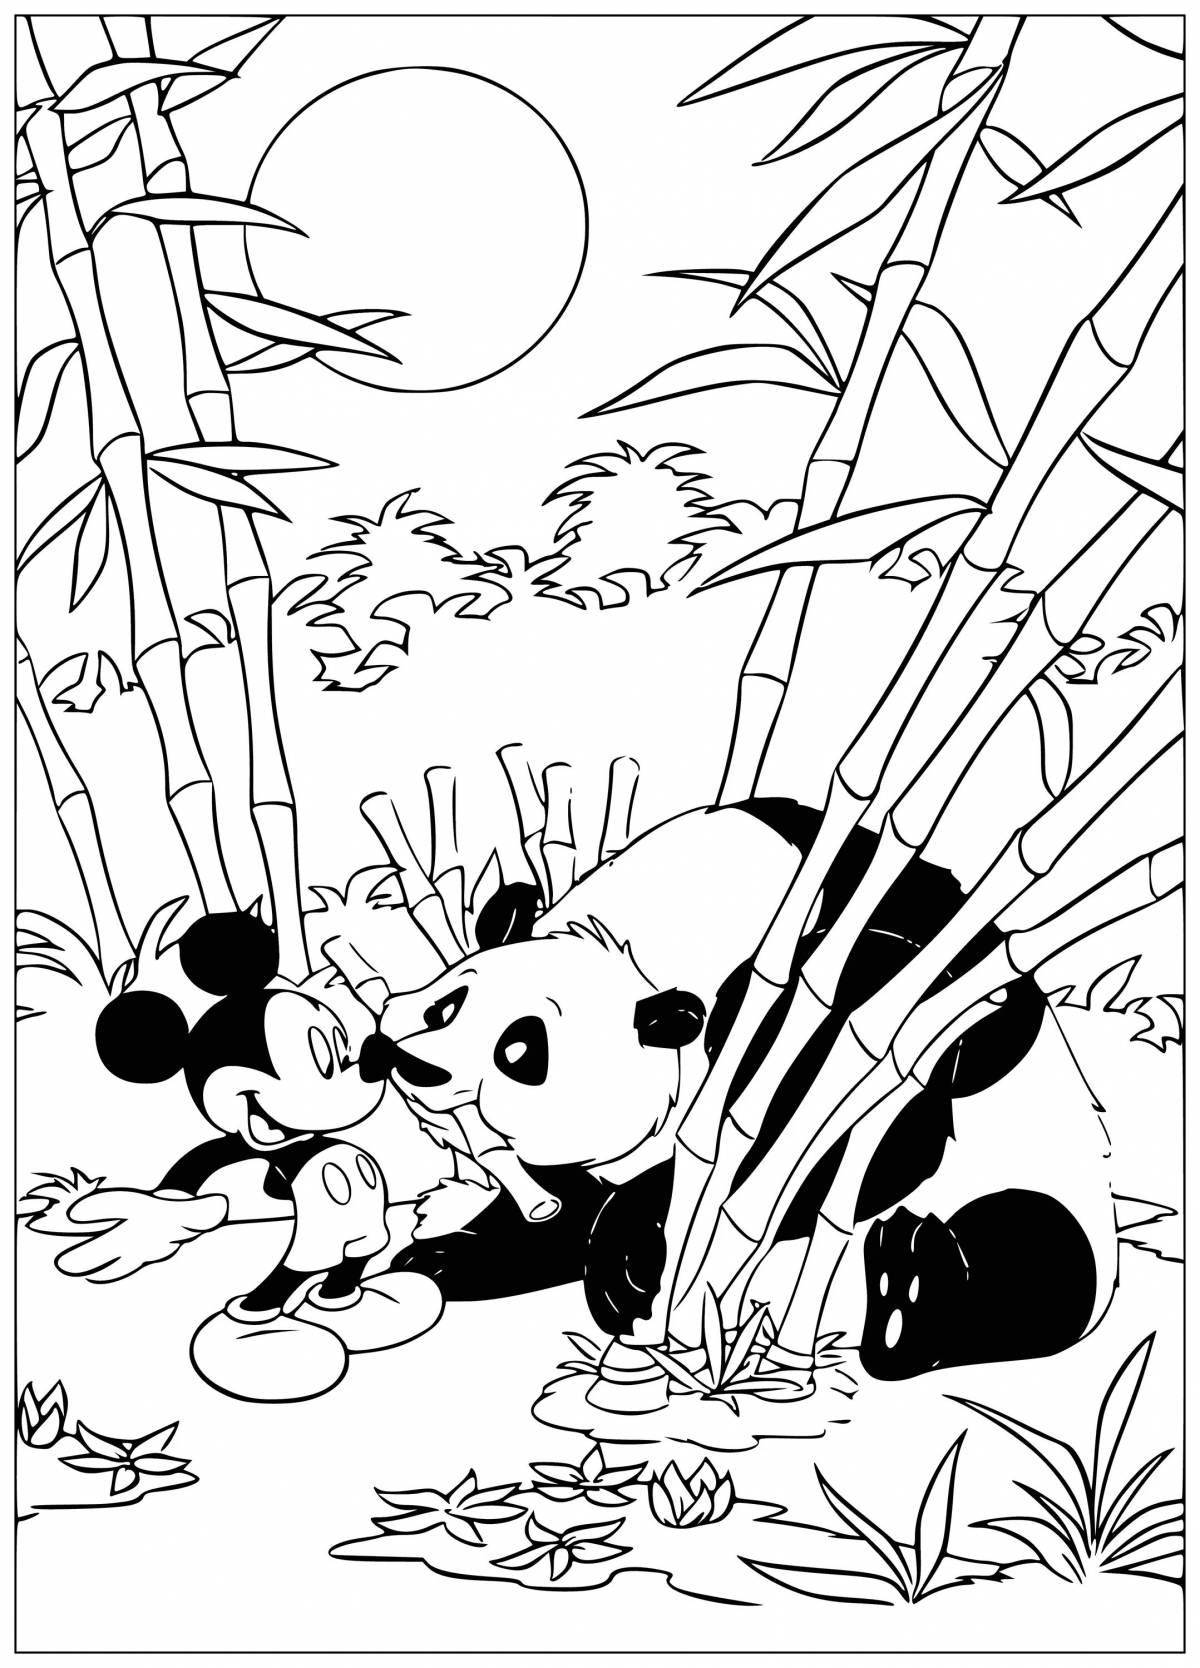 Gorgeous bamboo panda coloring book